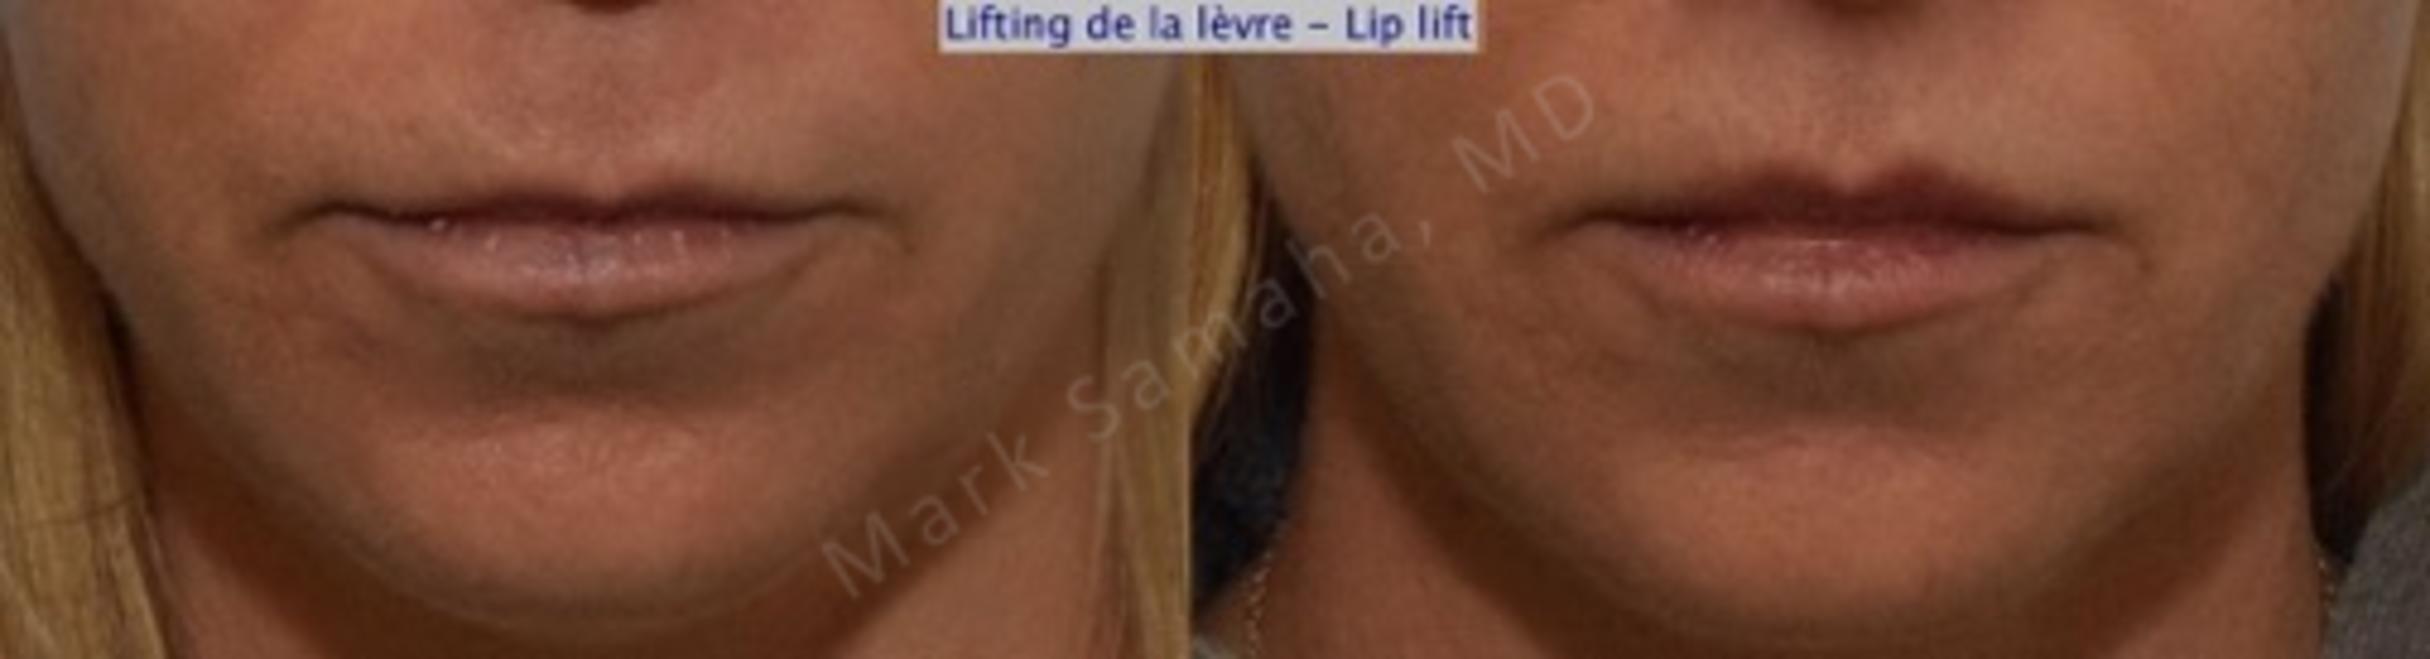 Before & After Lifting de la lèvre supérieure / Lip Lift  Case 115 View #1 View in Mount Royal, QC